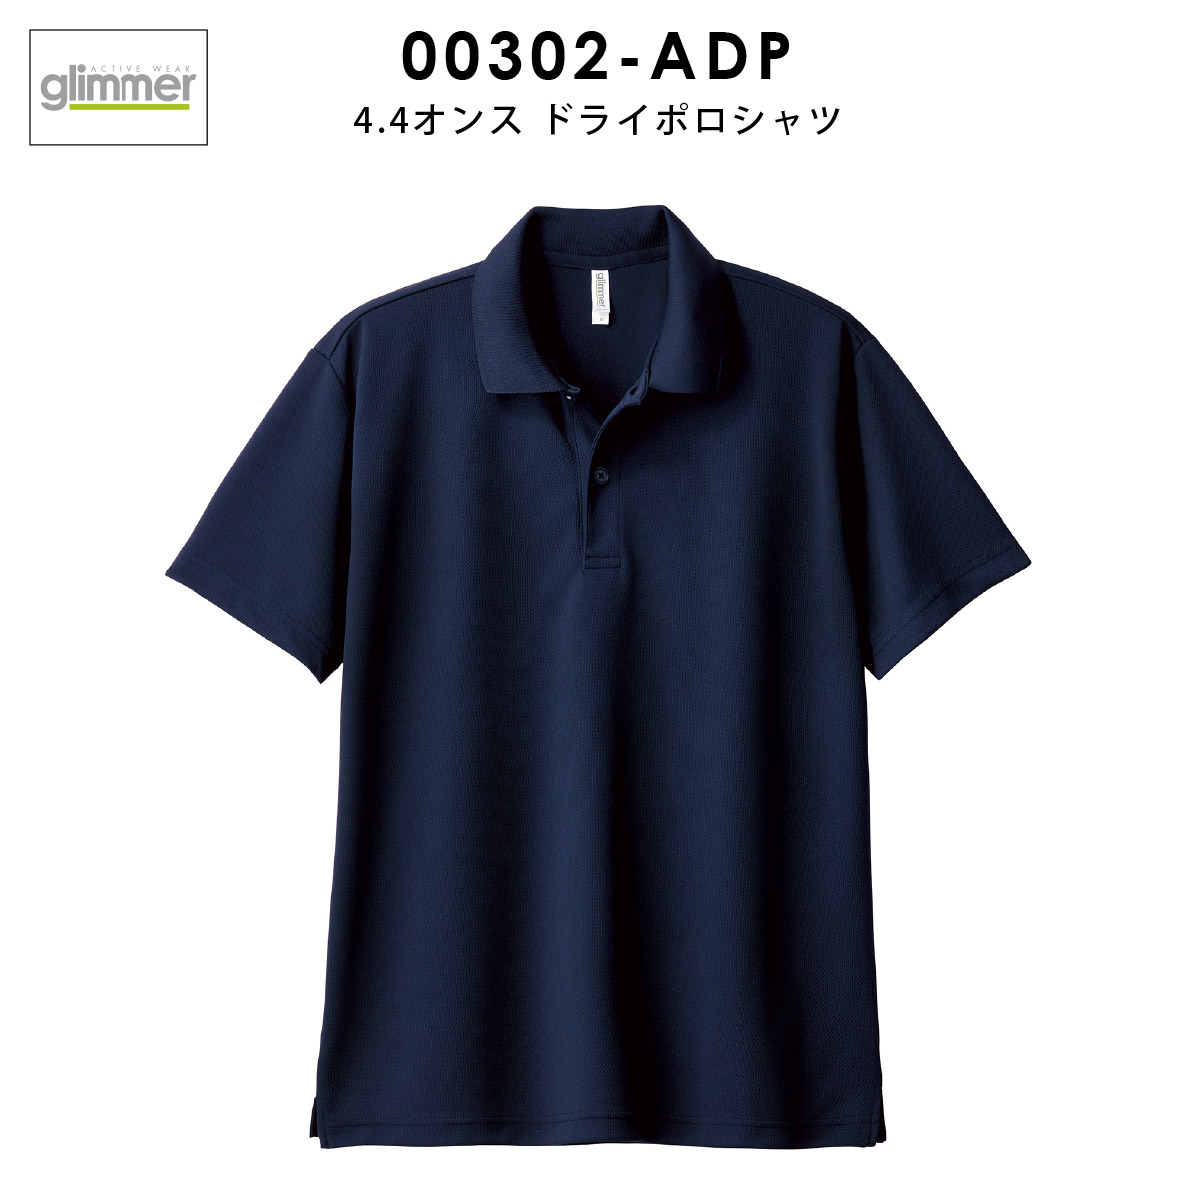 ポロシャツ メンズ 半袖 レディース 無地 吸汗 速乾 グリマー(glimmer) 4.4オンス 00302-ADP 302 早 通販 